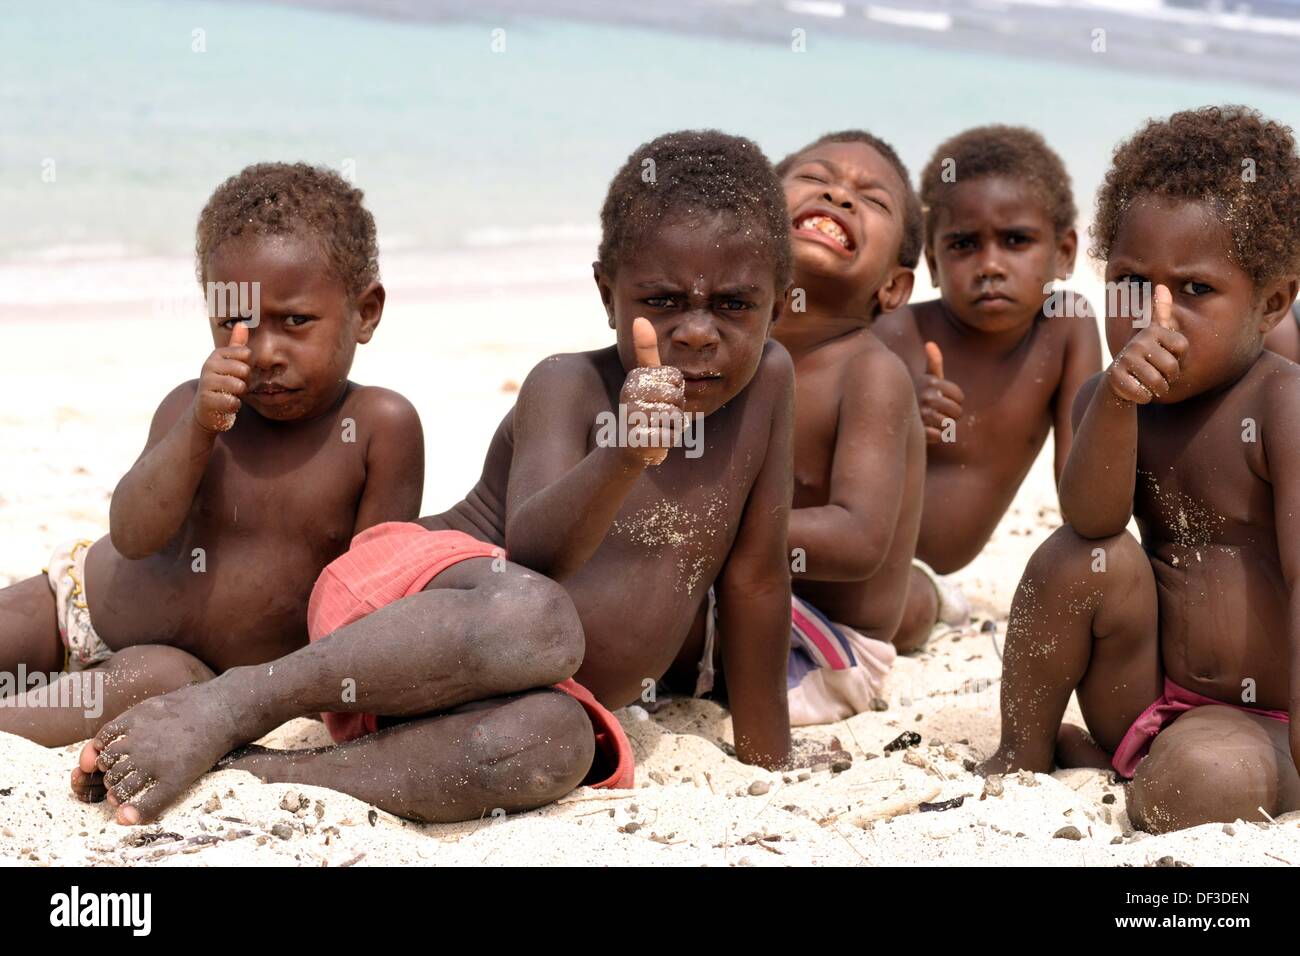 Kinder nackt strand Fkk Kinder